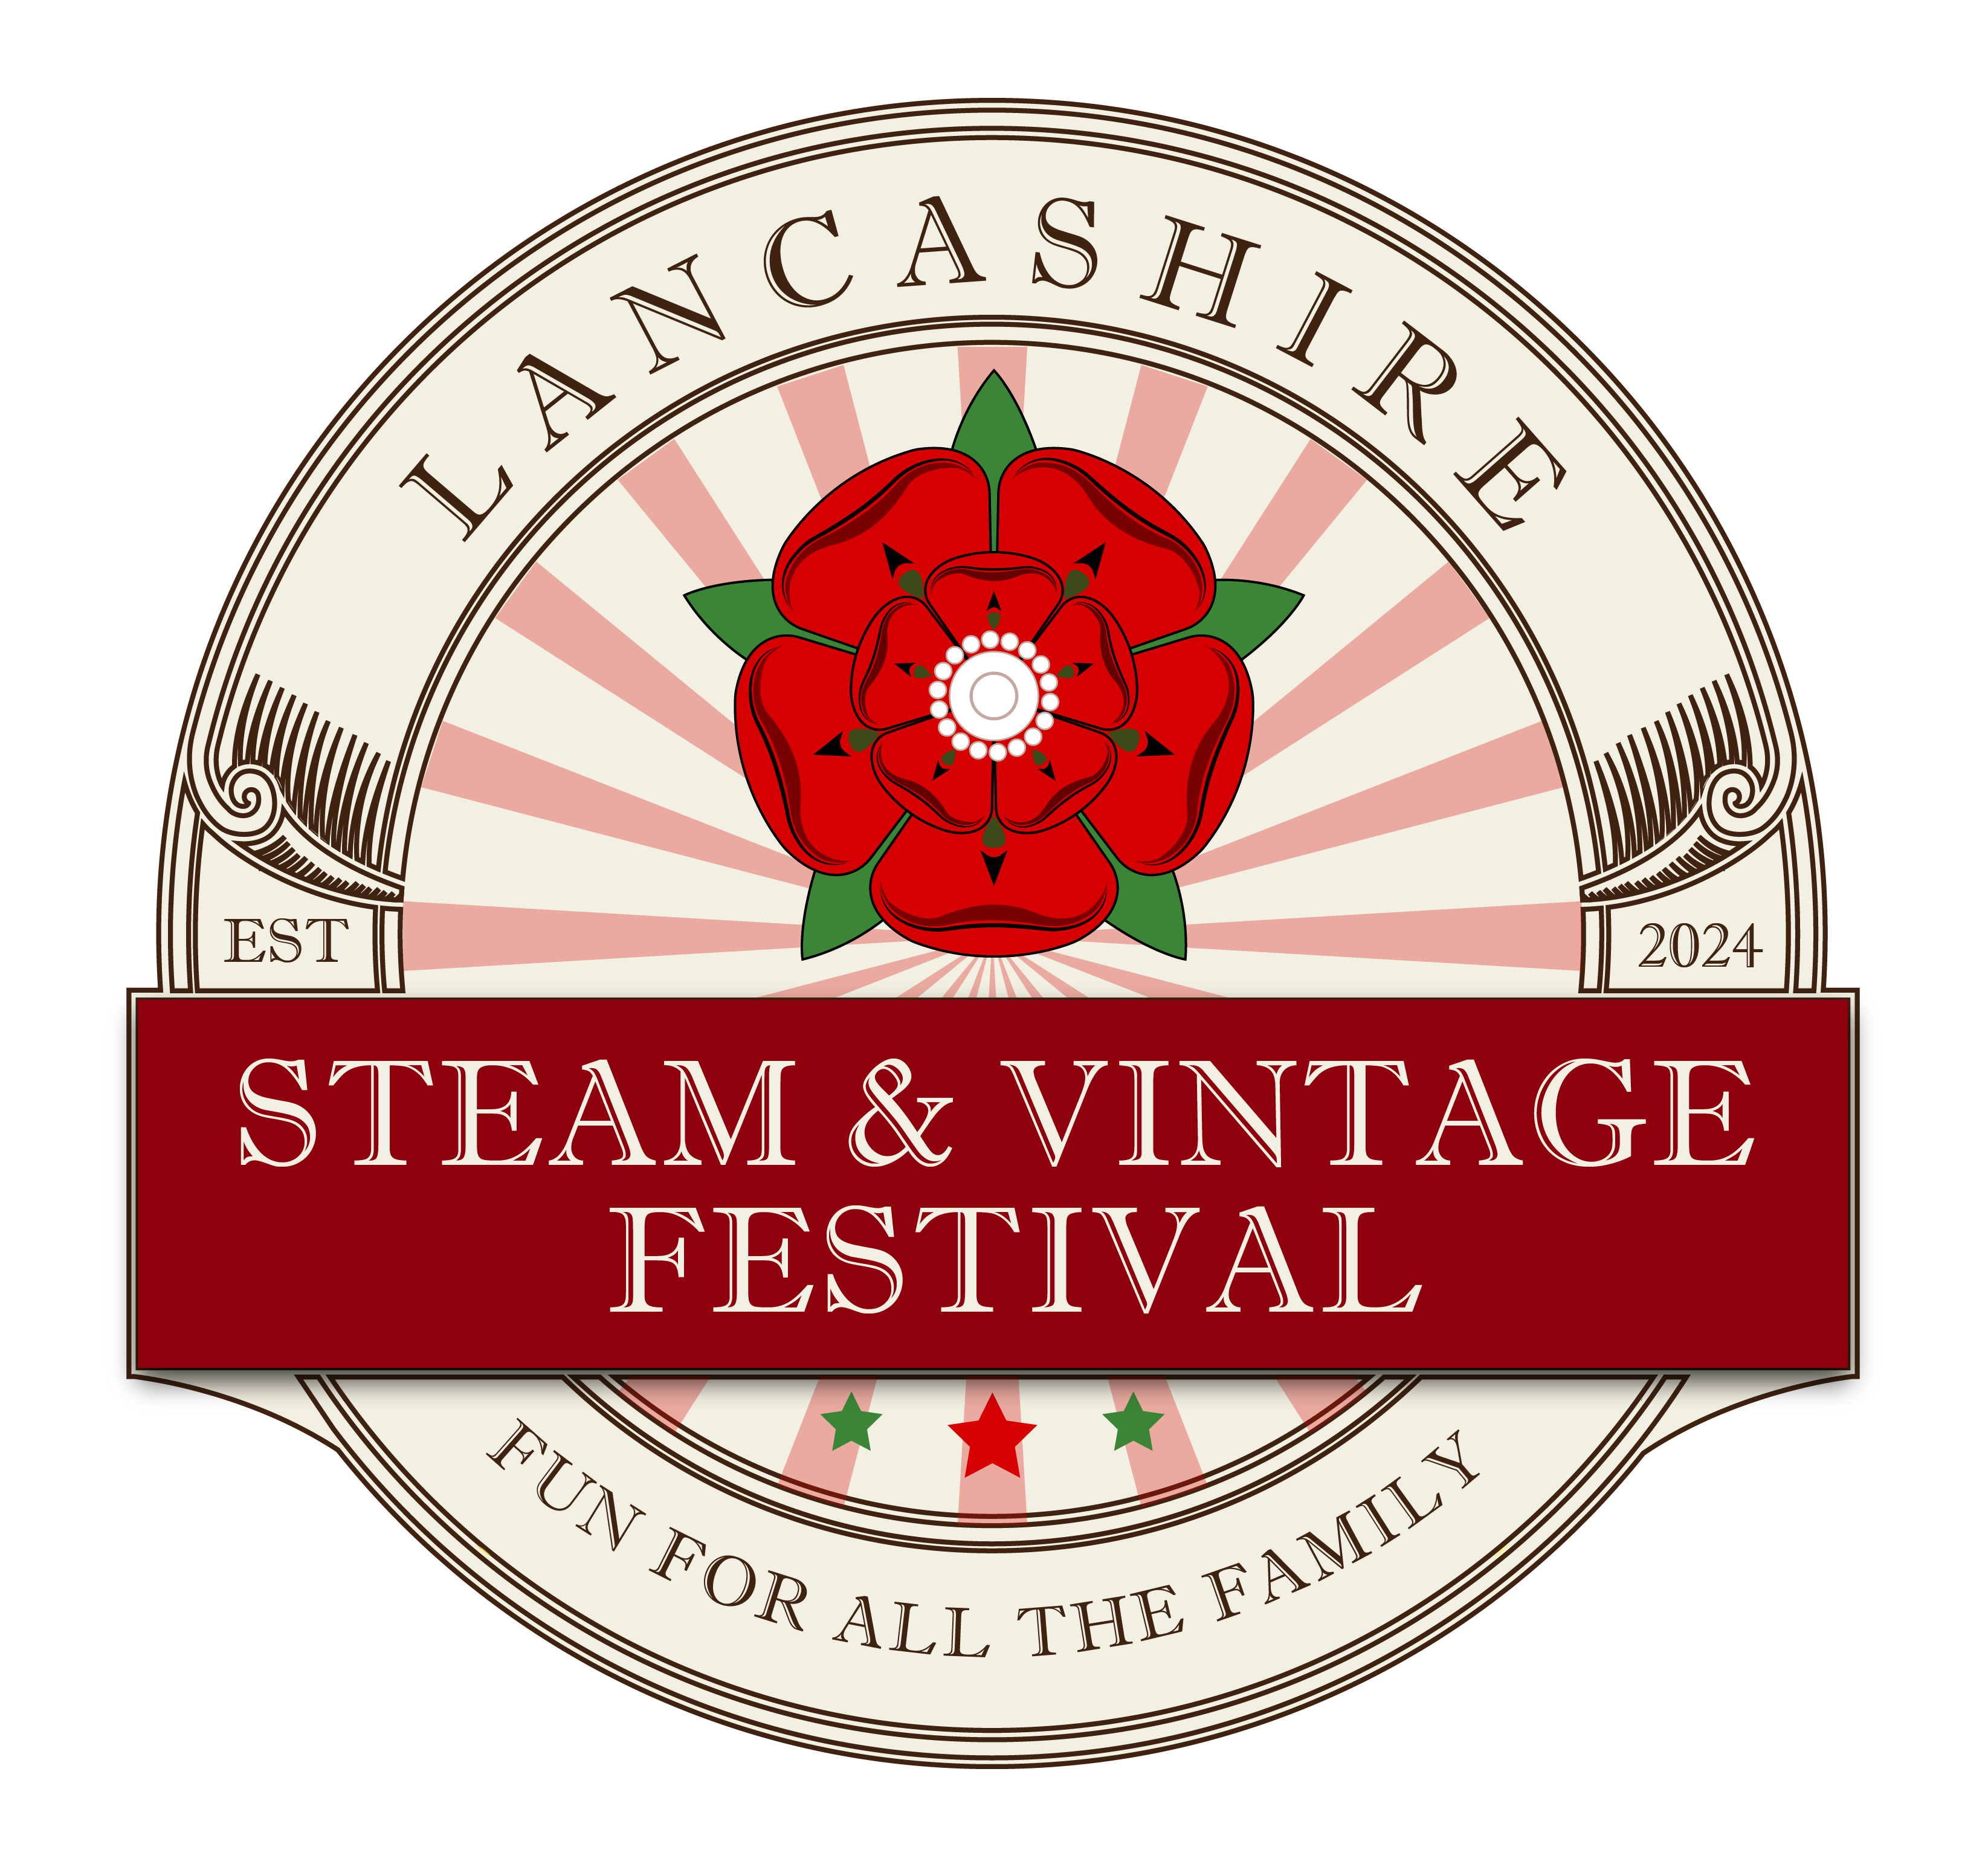 Lancashire Steam & Vintage Festival